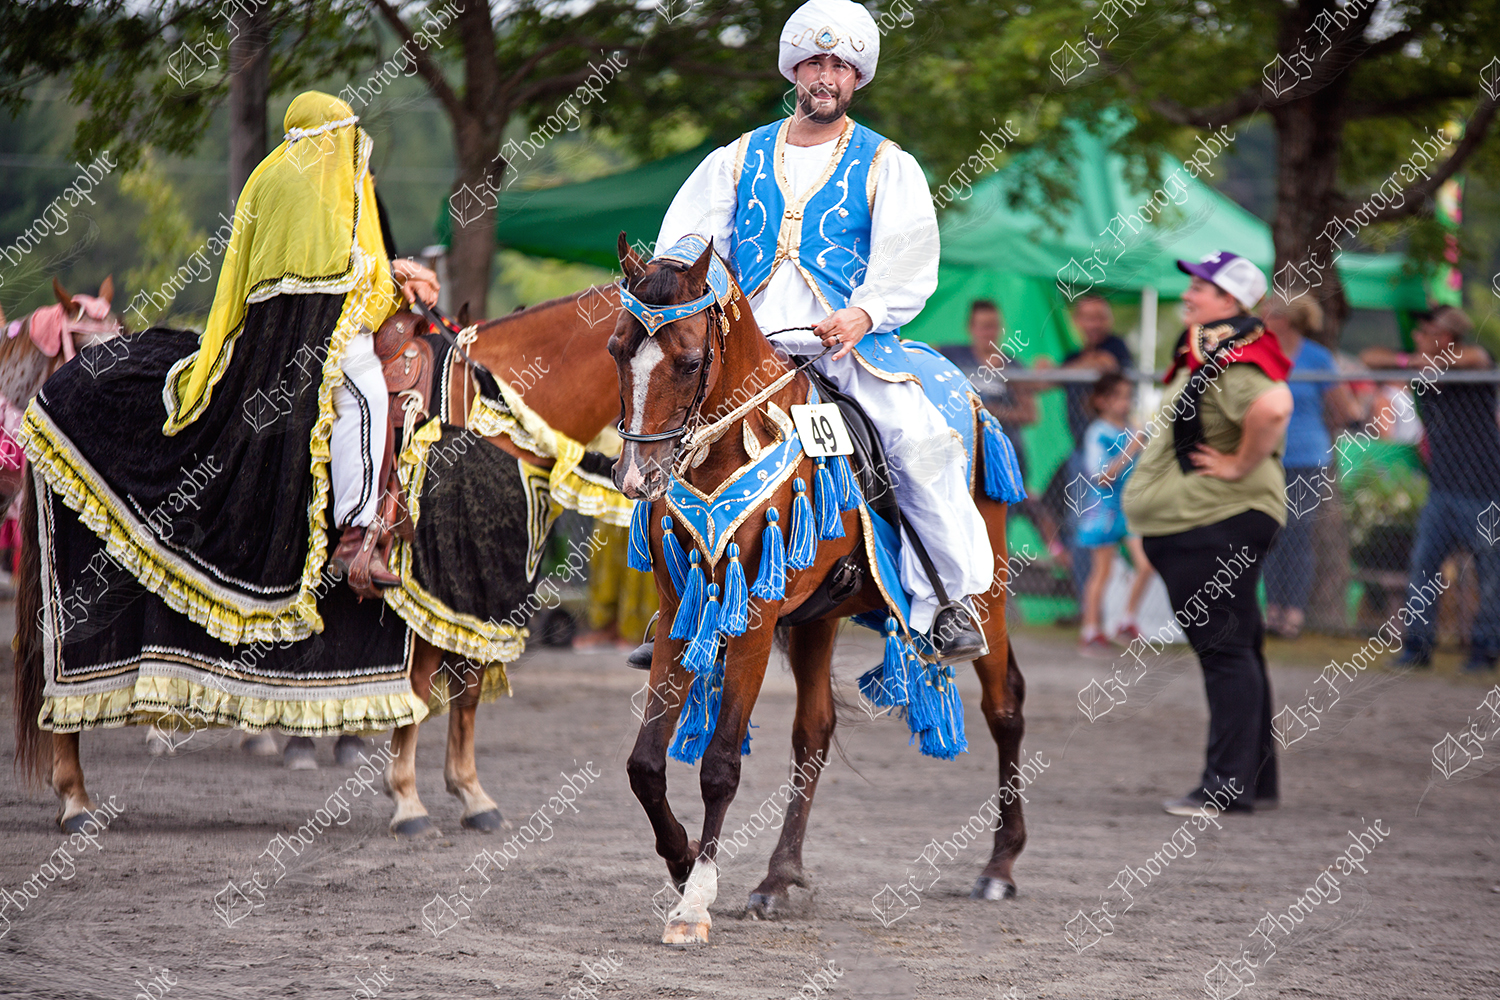 elze_photo_7111_plaisir_equin_chevaux_arabians_horses_costumed